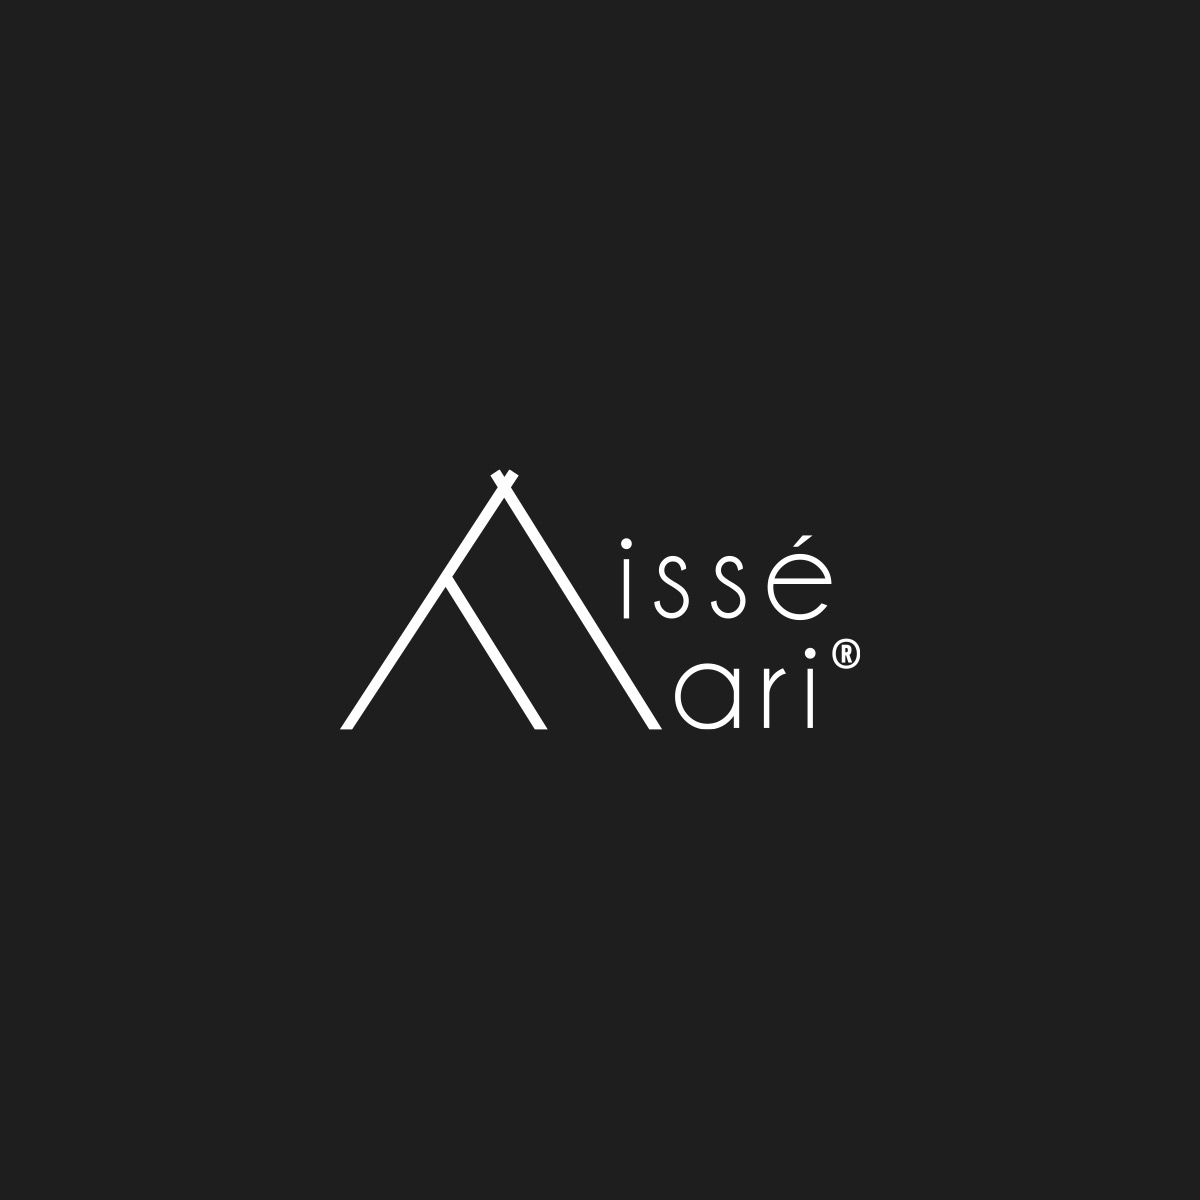 Logo Issé Ari design